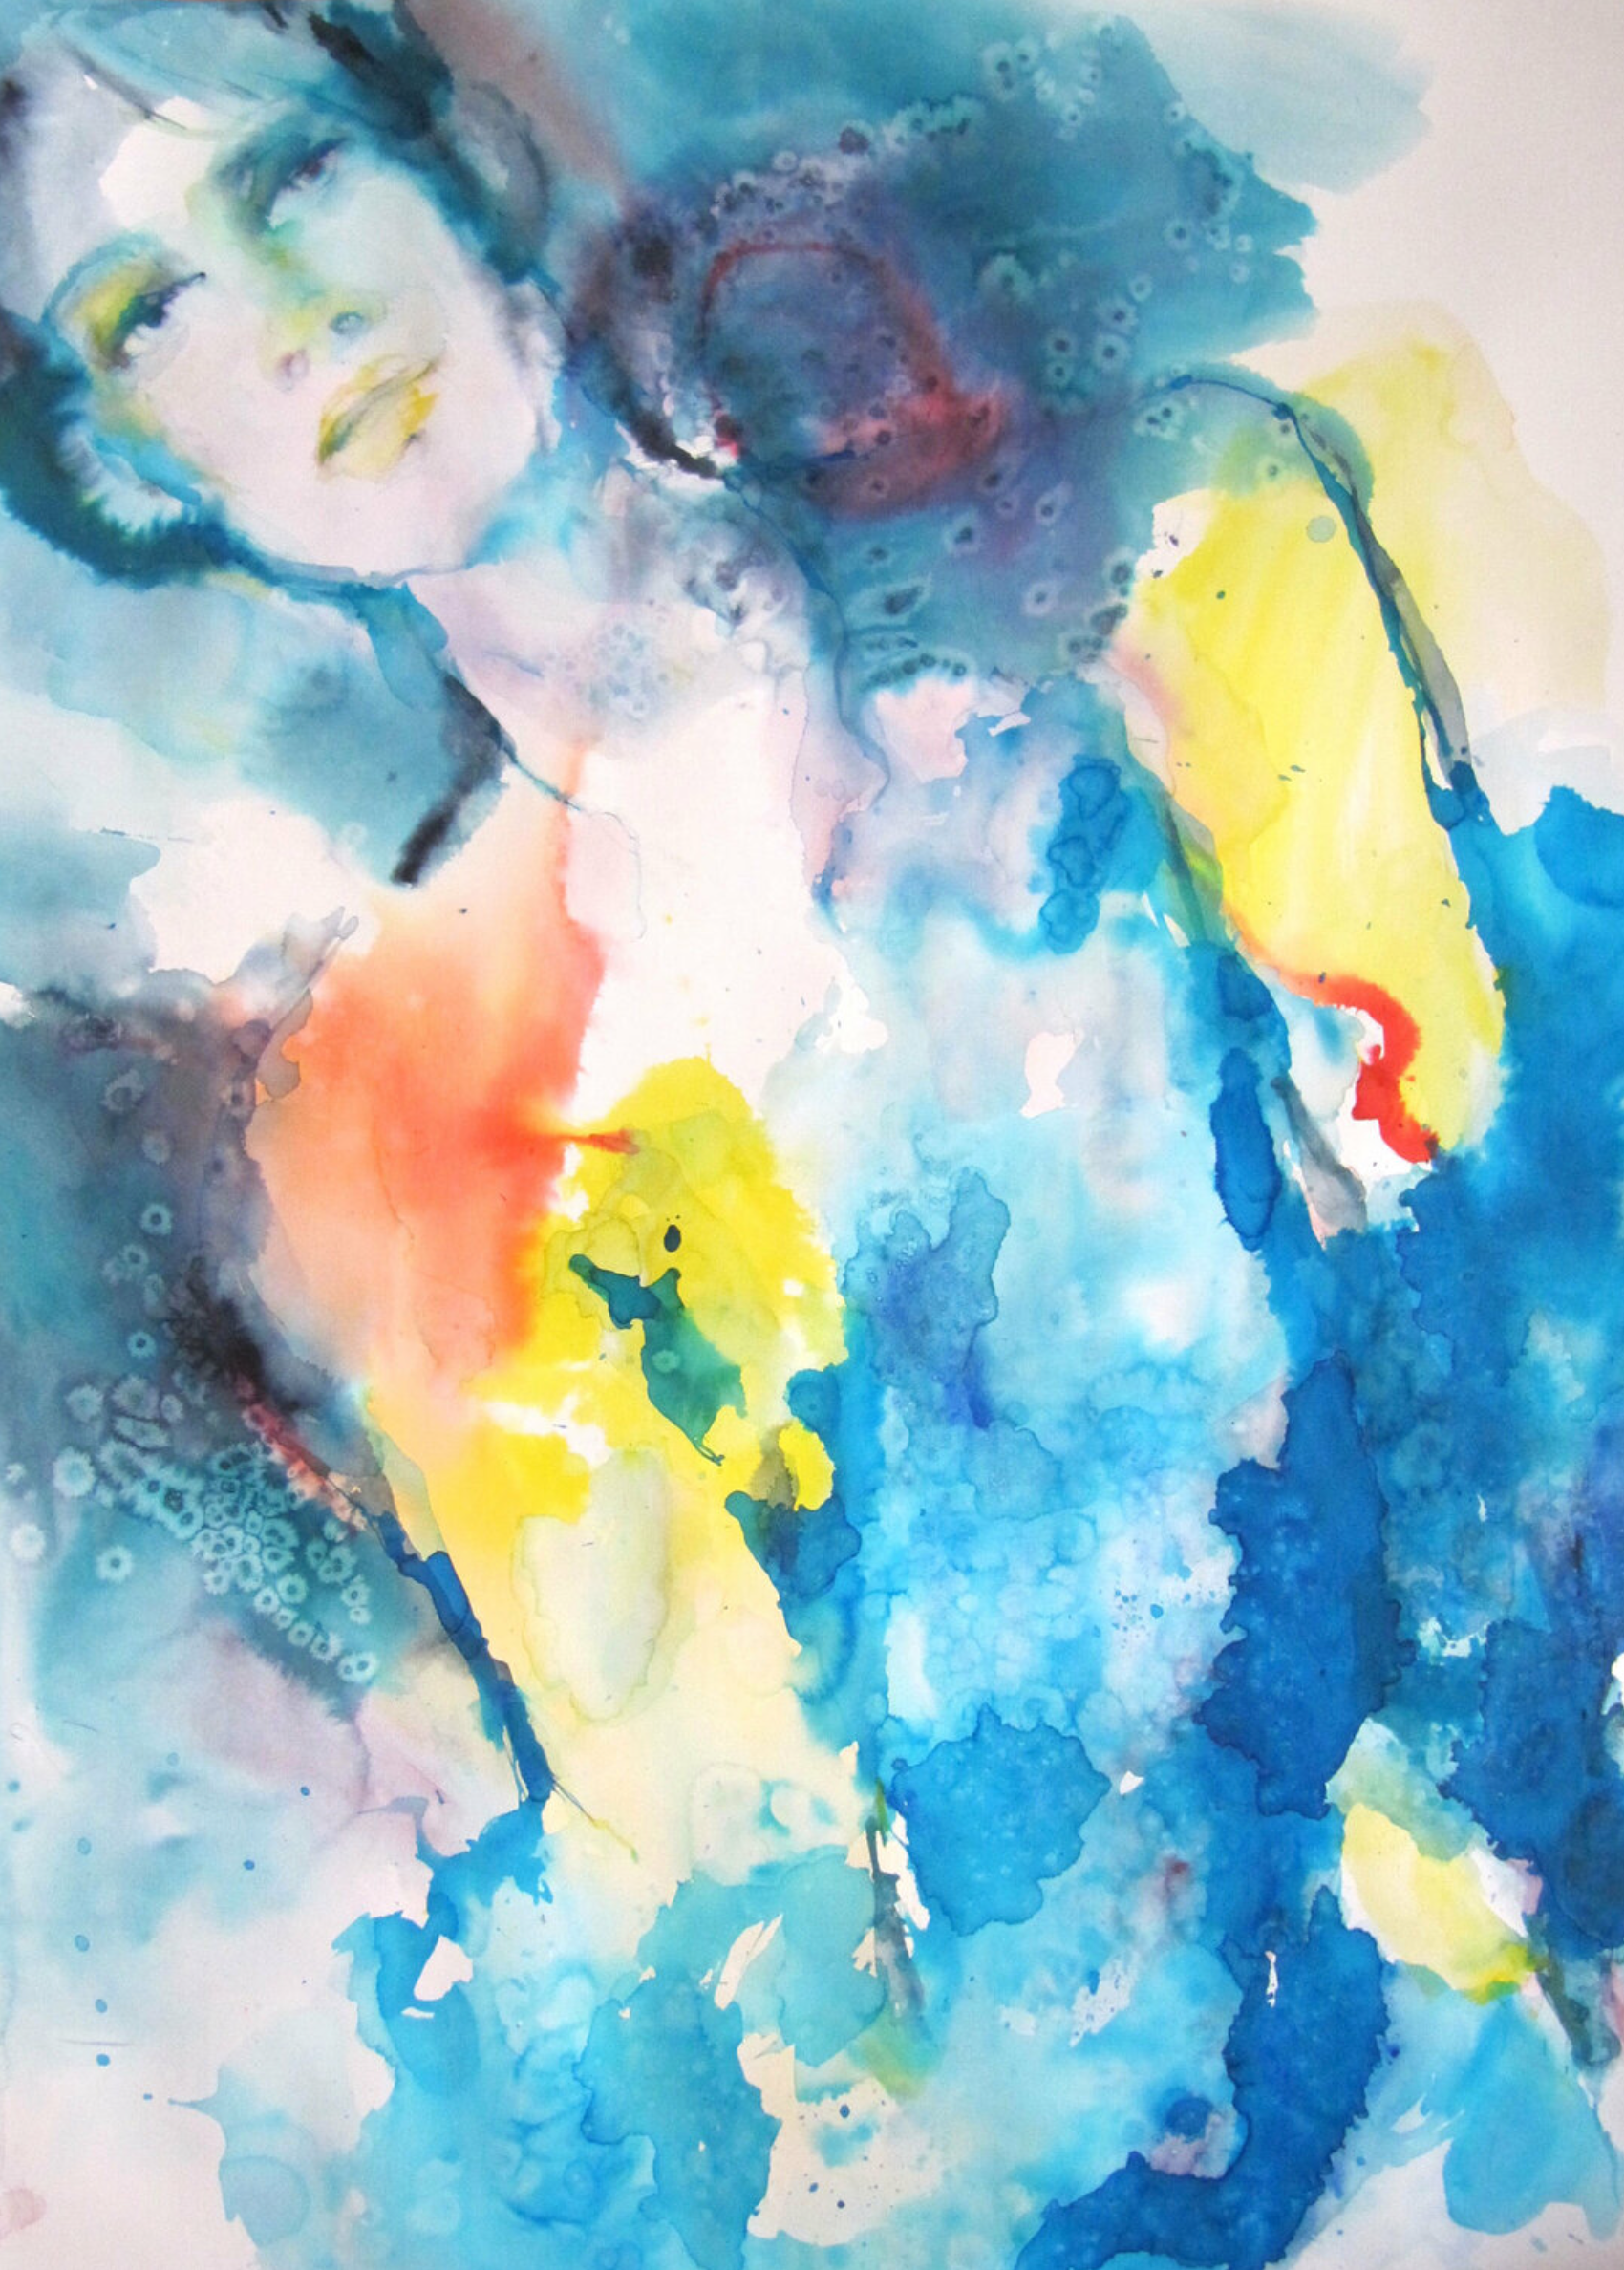 Sylvia Baldeva's "Rêverie" zeigt ein Aquarell, semi-abstraktes gemaltes Gemälde. Porträt, Seins zustand, Traum, Expressionismus,  Aquarell und Tinte auf Canson®-Papier  Gerahmte Arbeit.